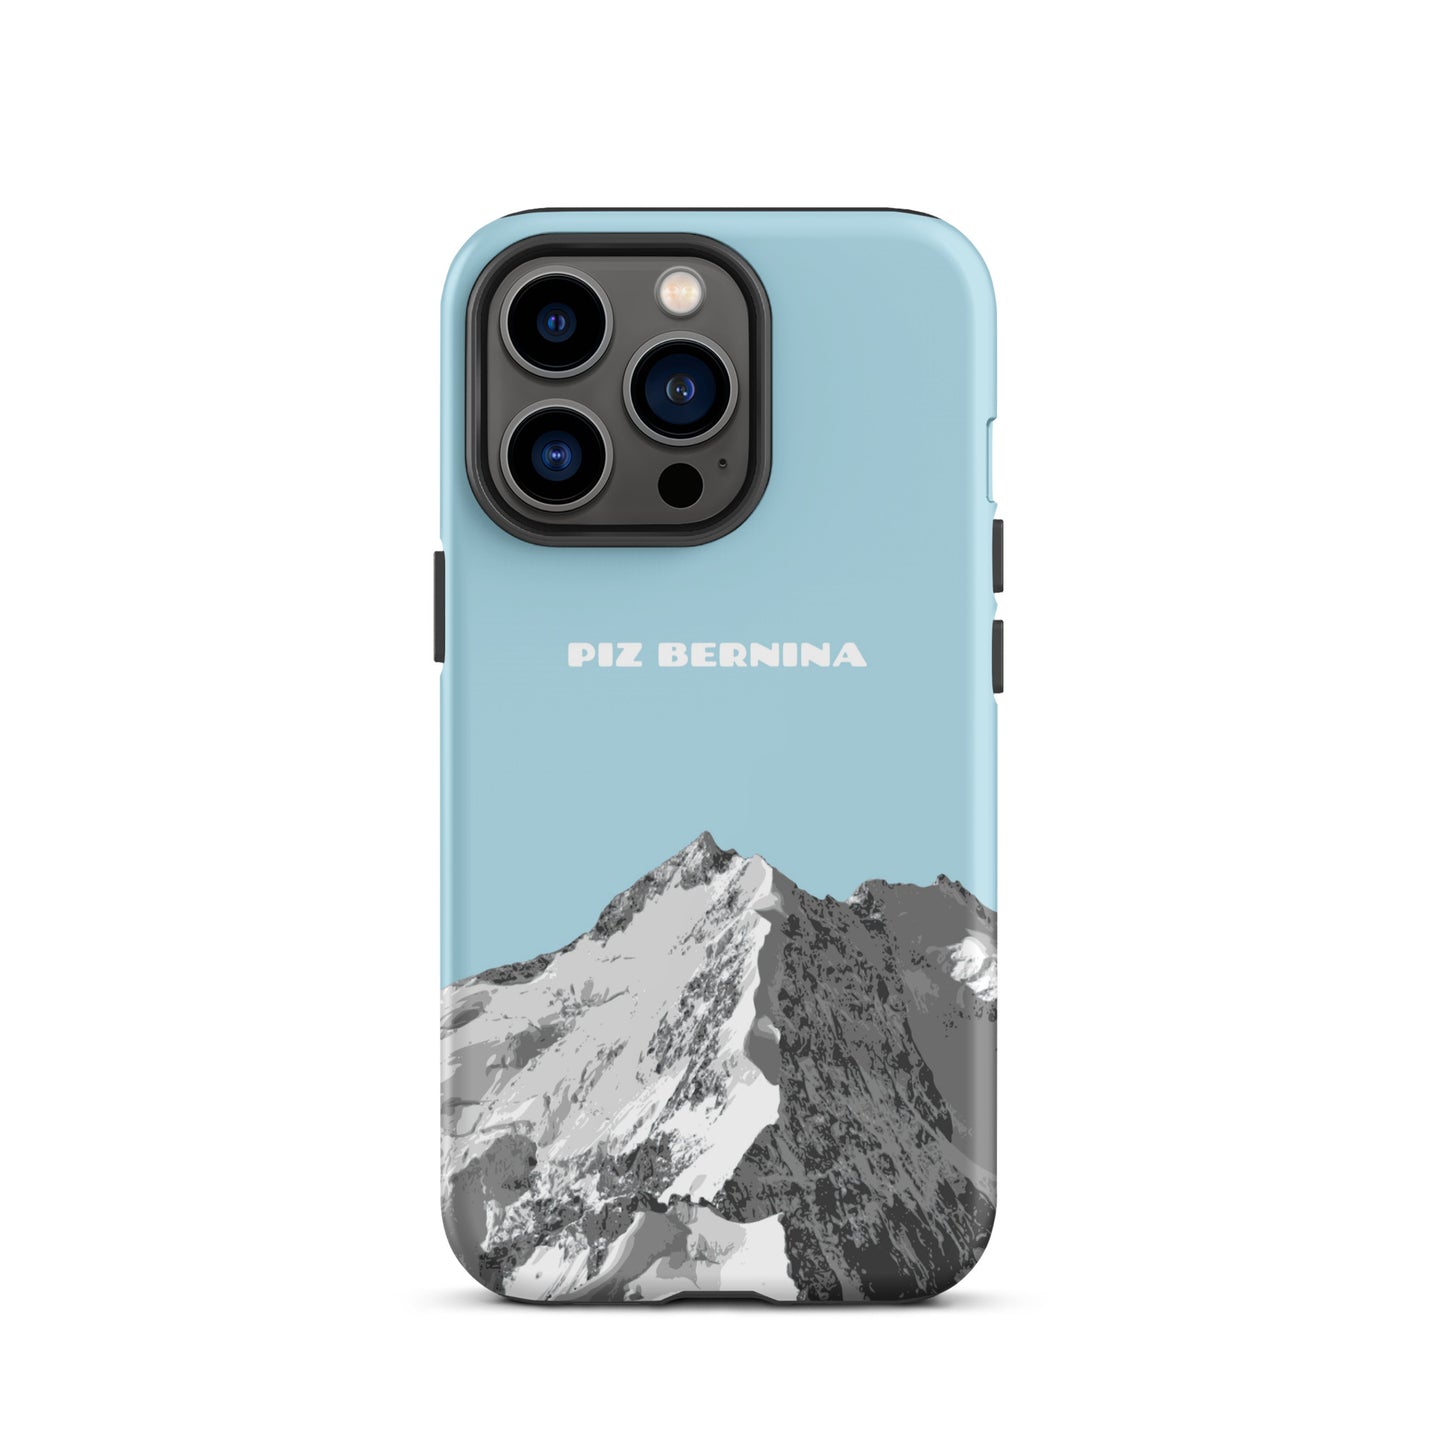 Hülle für das iPhone 13 Pro von Apple in der Farbe Hellblau, dass den Piz Bernina in Graubünden zeigt.